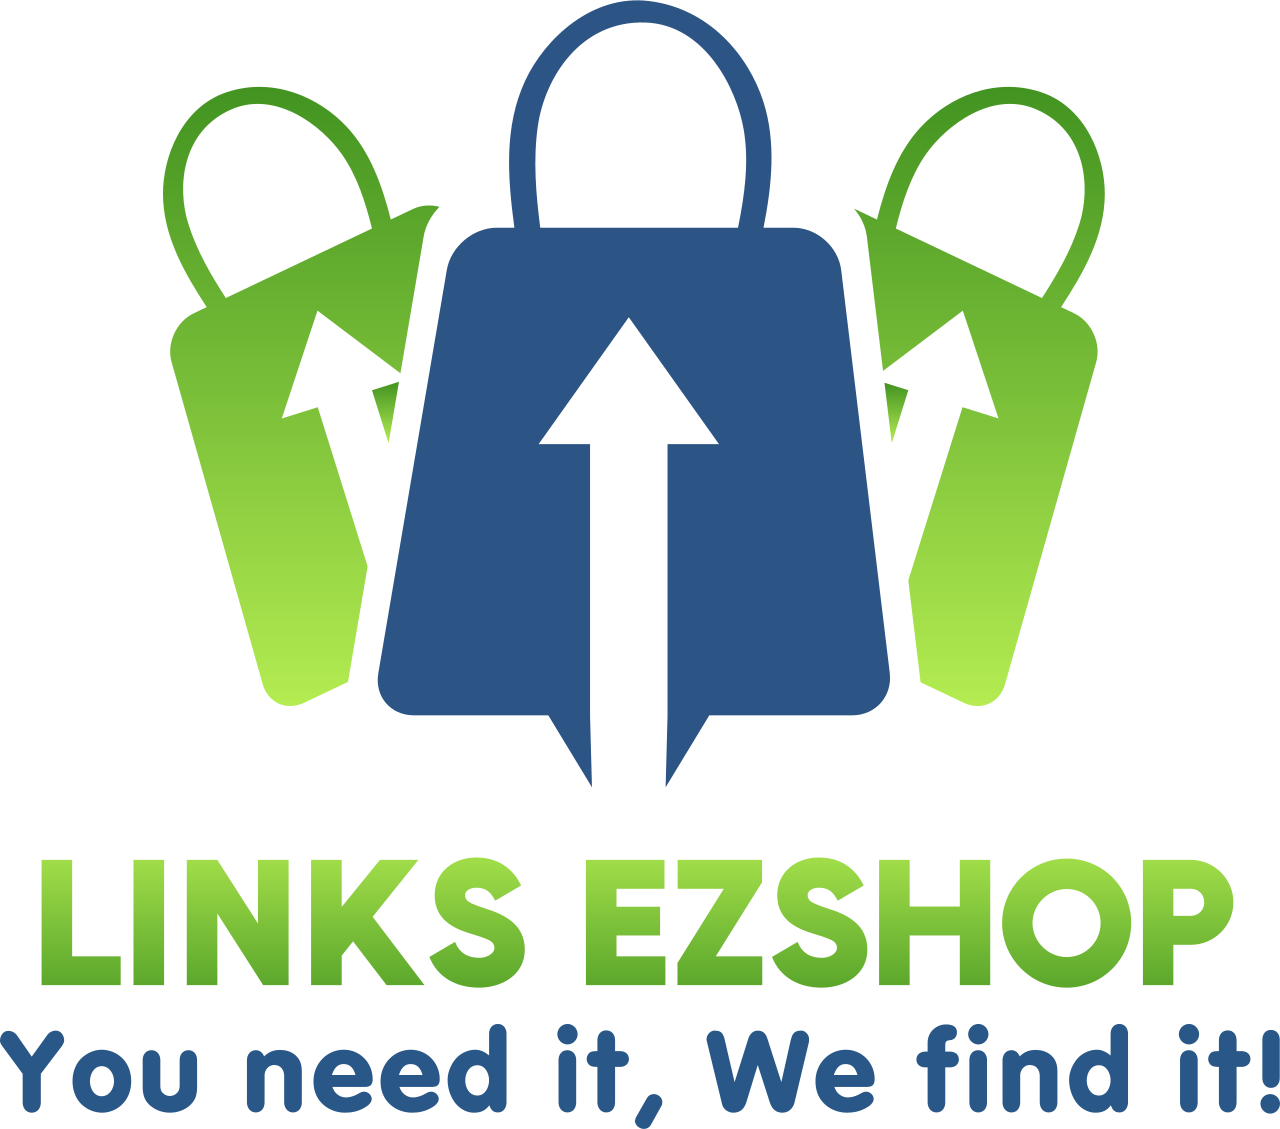 Links EZShop's web page